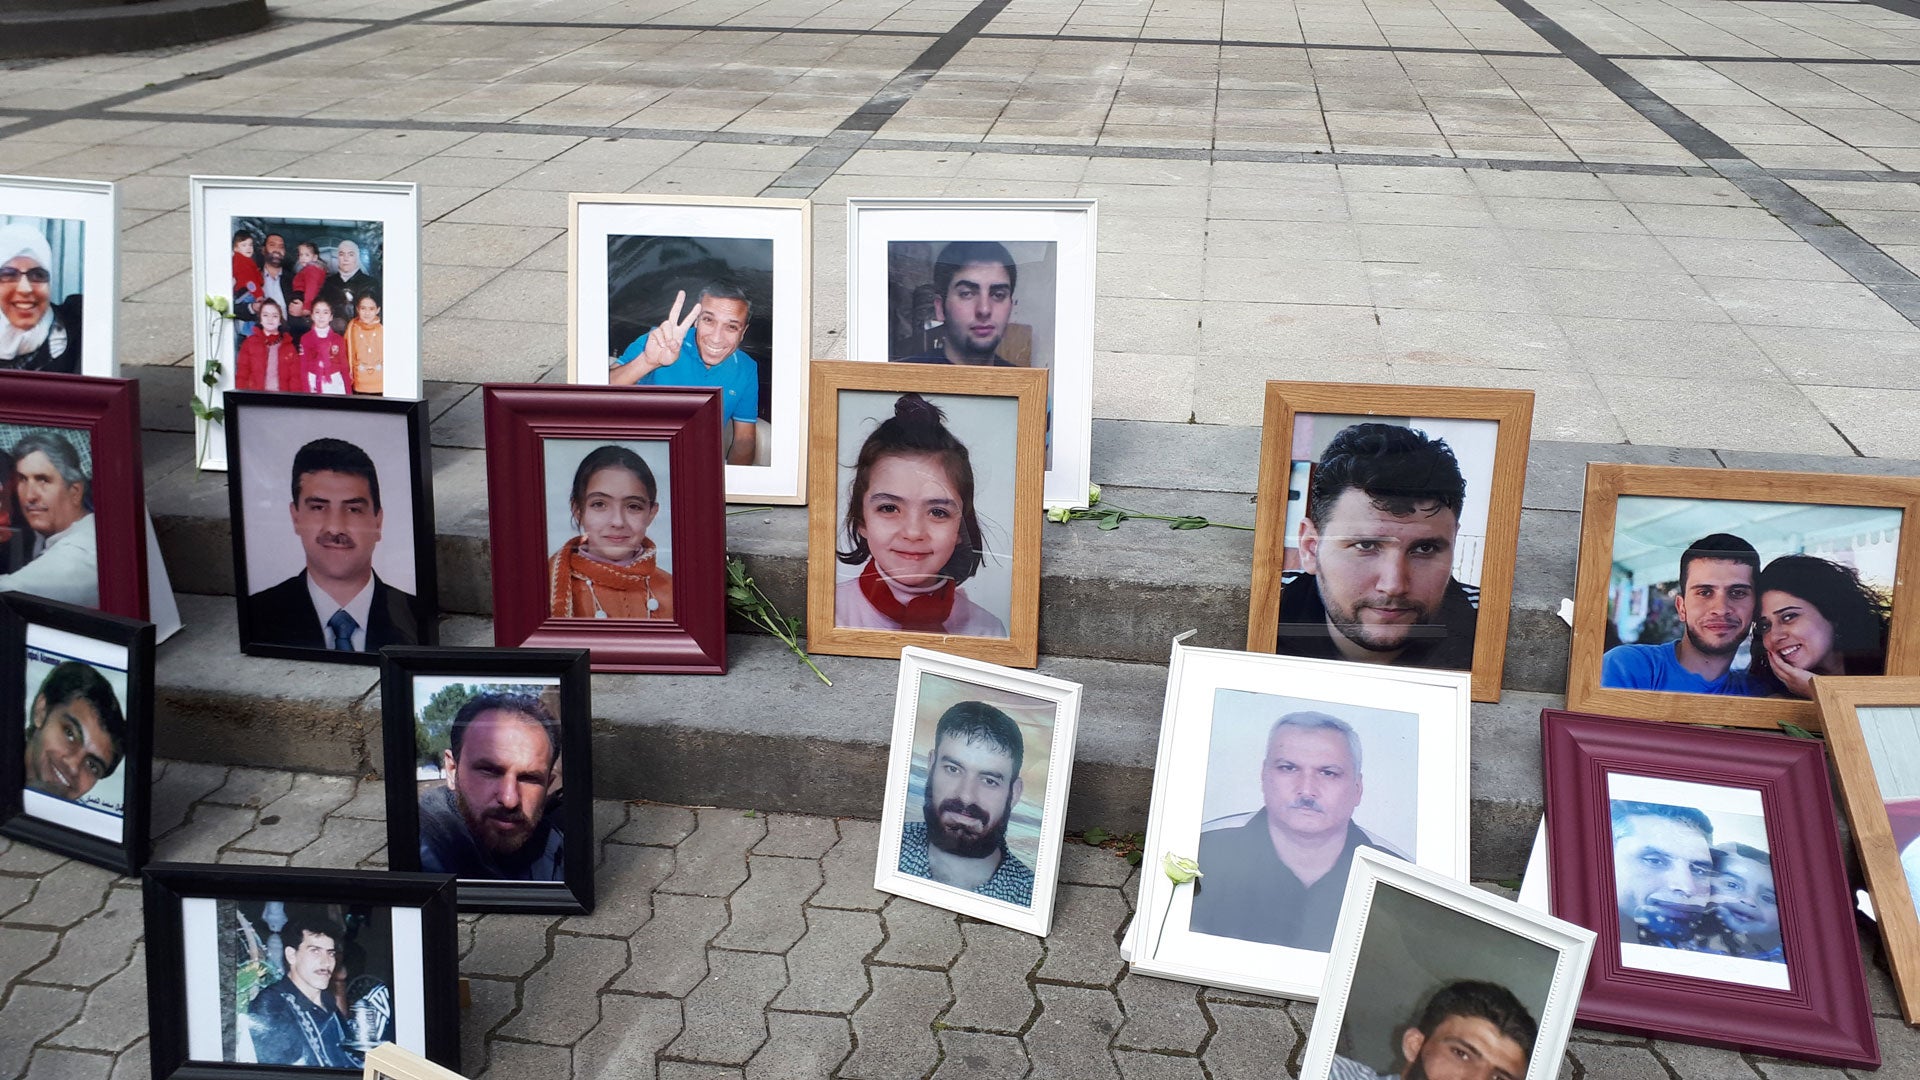  صور سوريين اعتقلوا أو تم إخفاؤهم وضعتها "عائلات من أجل الحرية" كجزء من مظاهرة أمام المحكمة في كوبلنز، 2 يوليو/تموز 2020. 